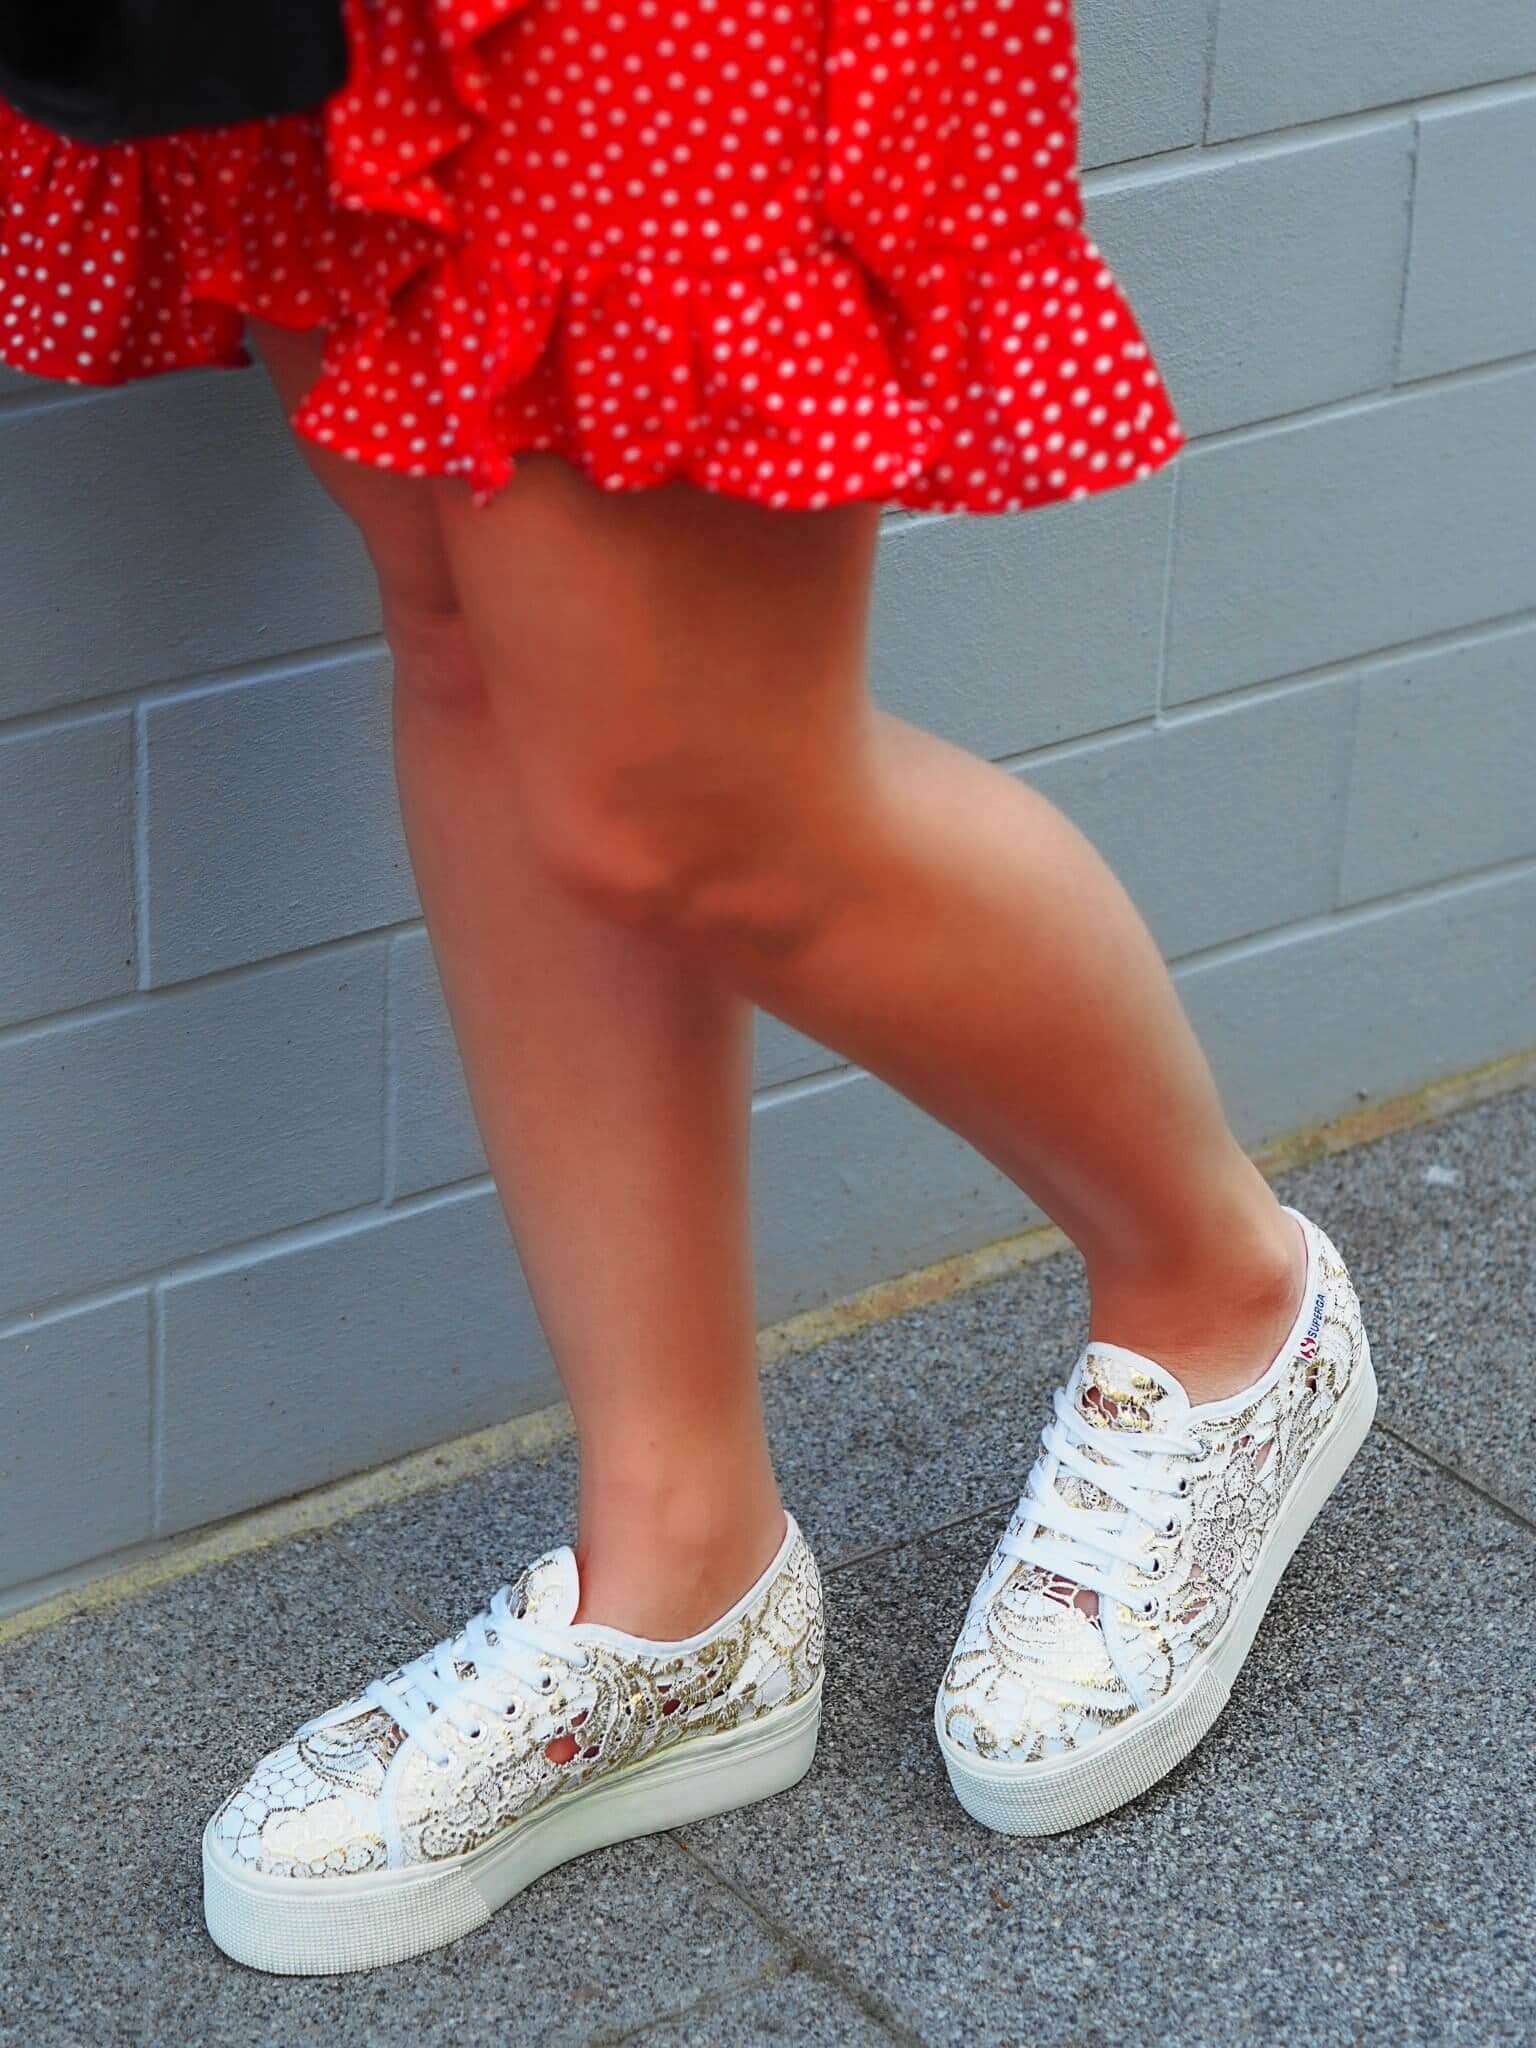 Heute zeige ich euch auf meinem Blog die super stylischen Platform Superga Sneakers von Footway in einem trendigen OOTD mit top Polka Dots Kleid von NA-KD